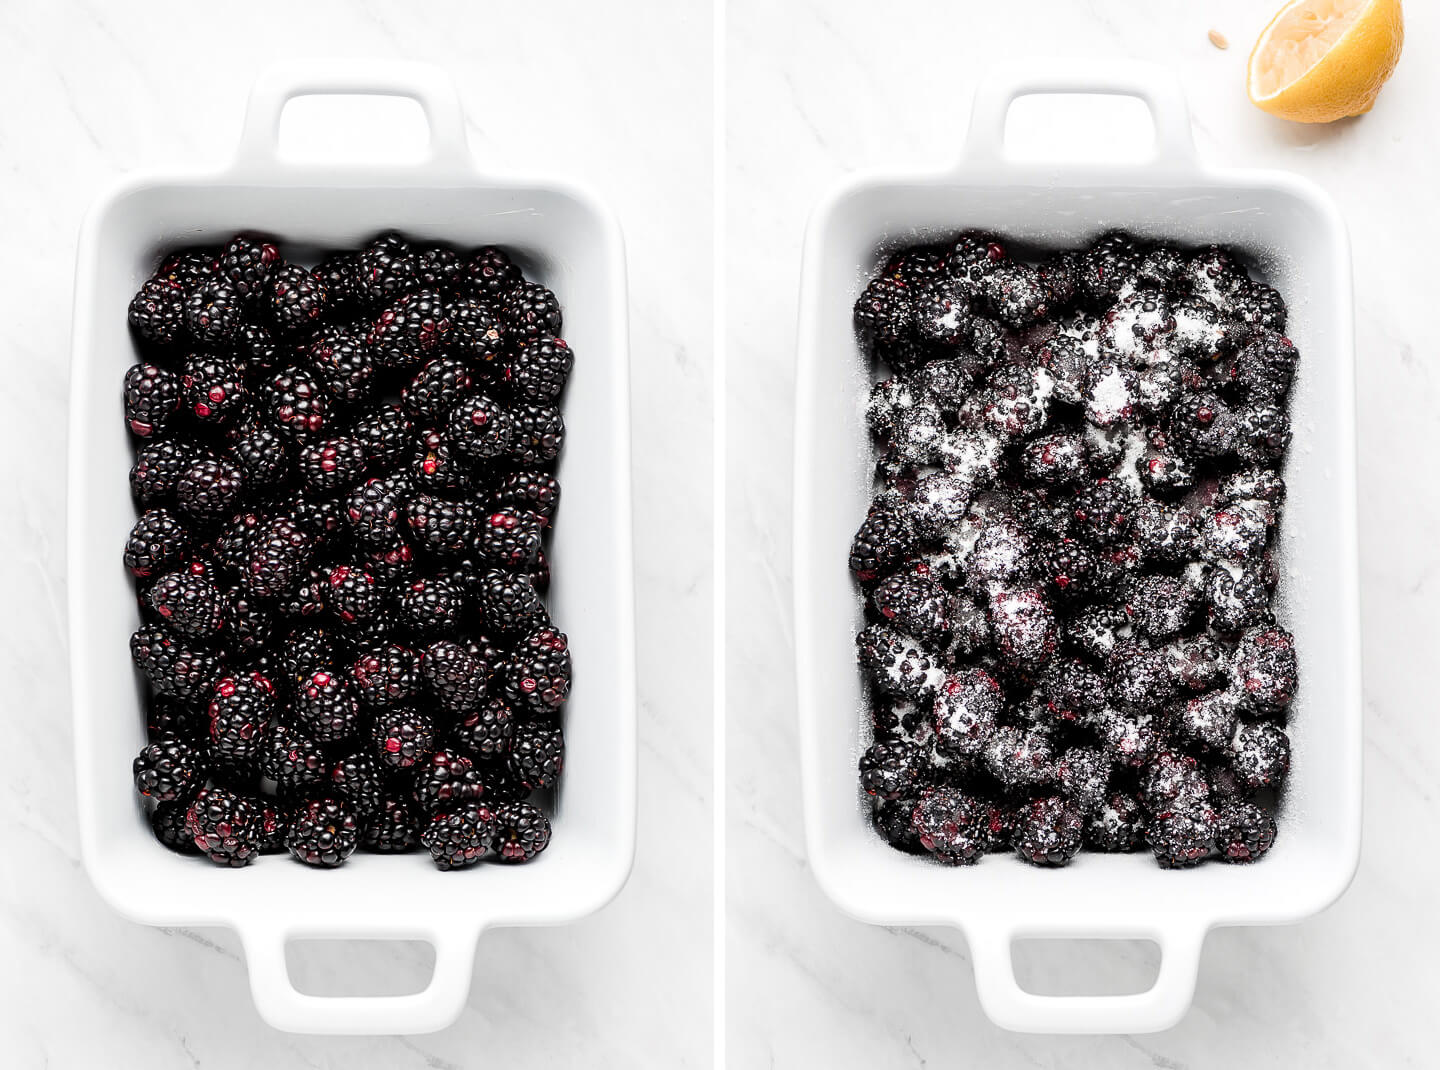 Fresh blackberries in a white baking dish; Blackberries tossed in lemon juice and sugar.